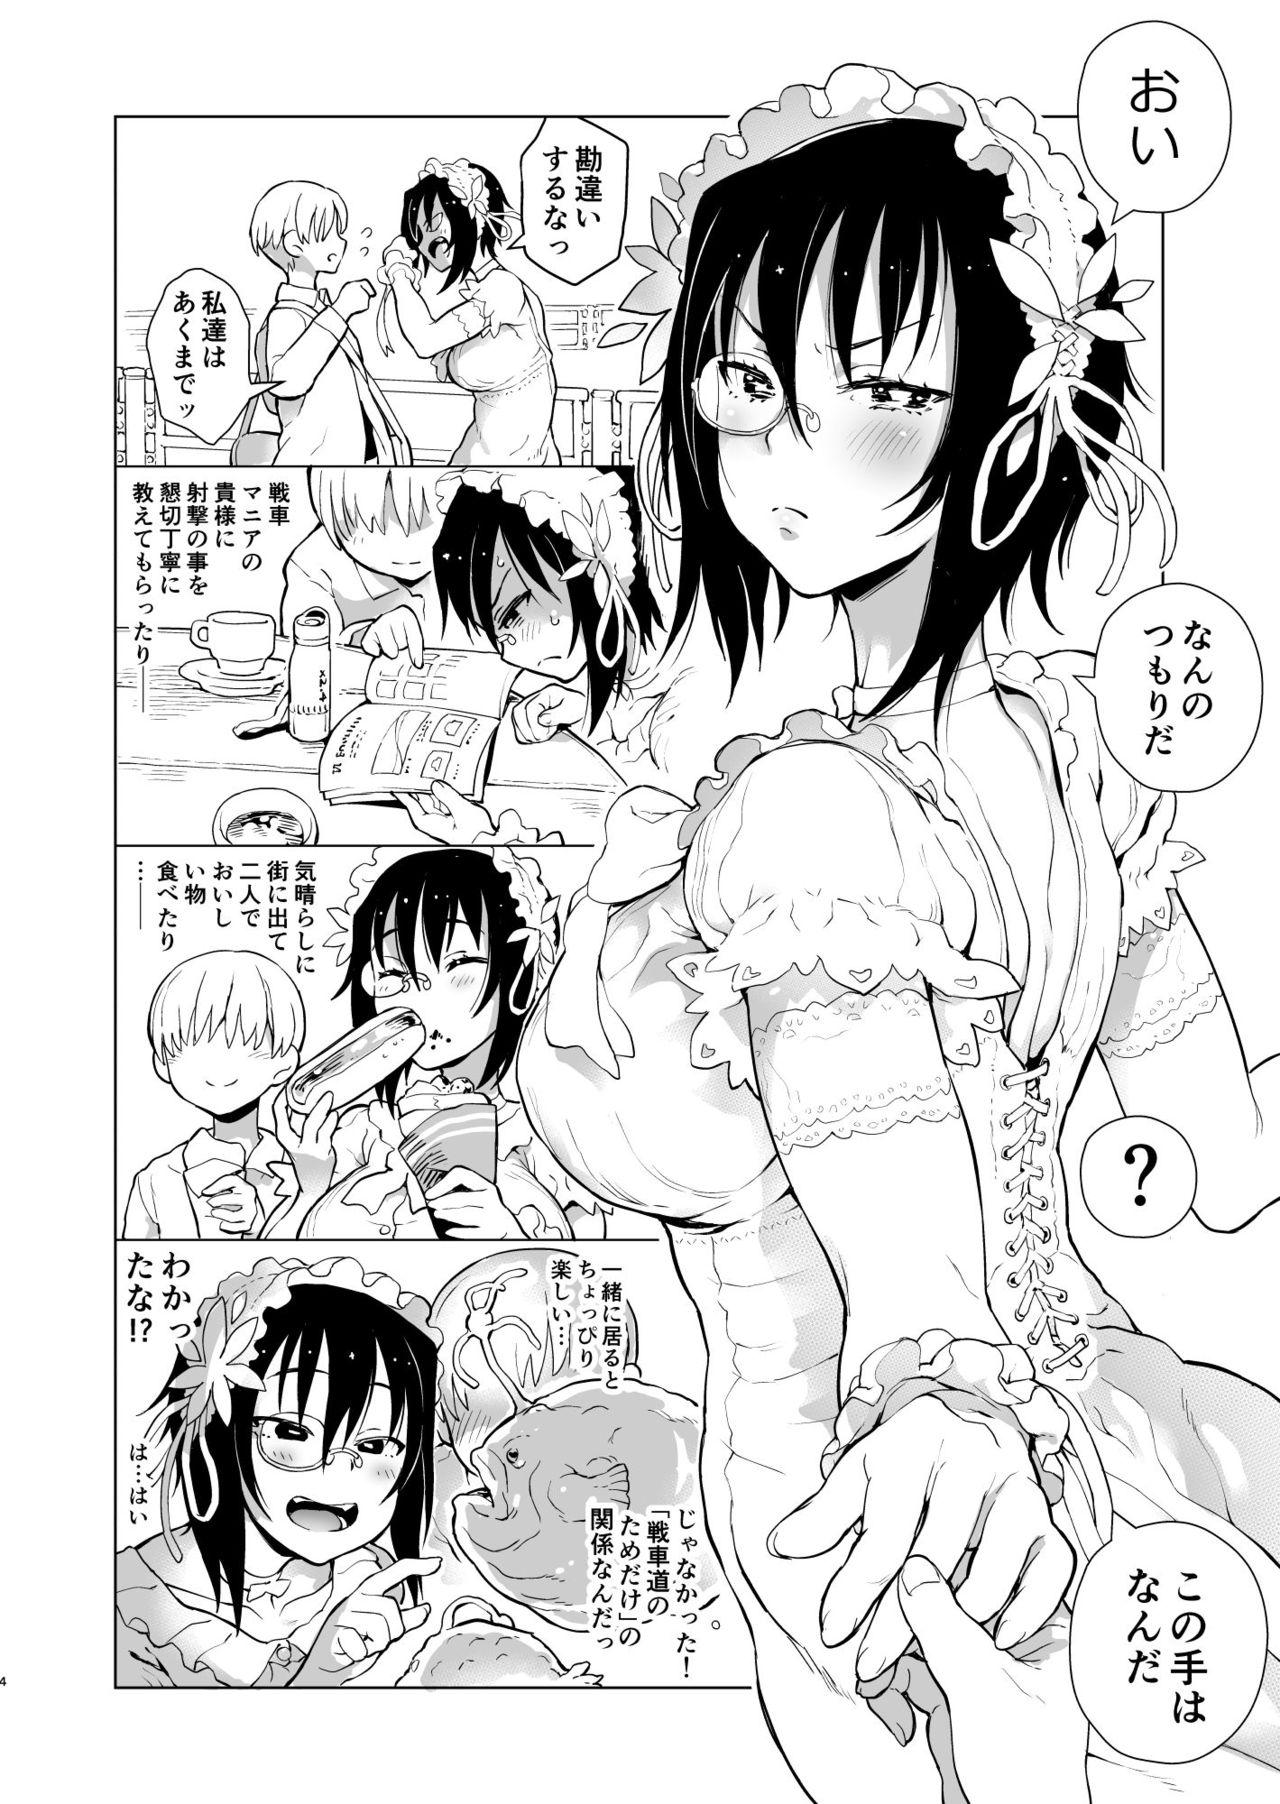 Doctor Nakanaide! Momo-chan!! - Girls und panzer Daring - Page 3